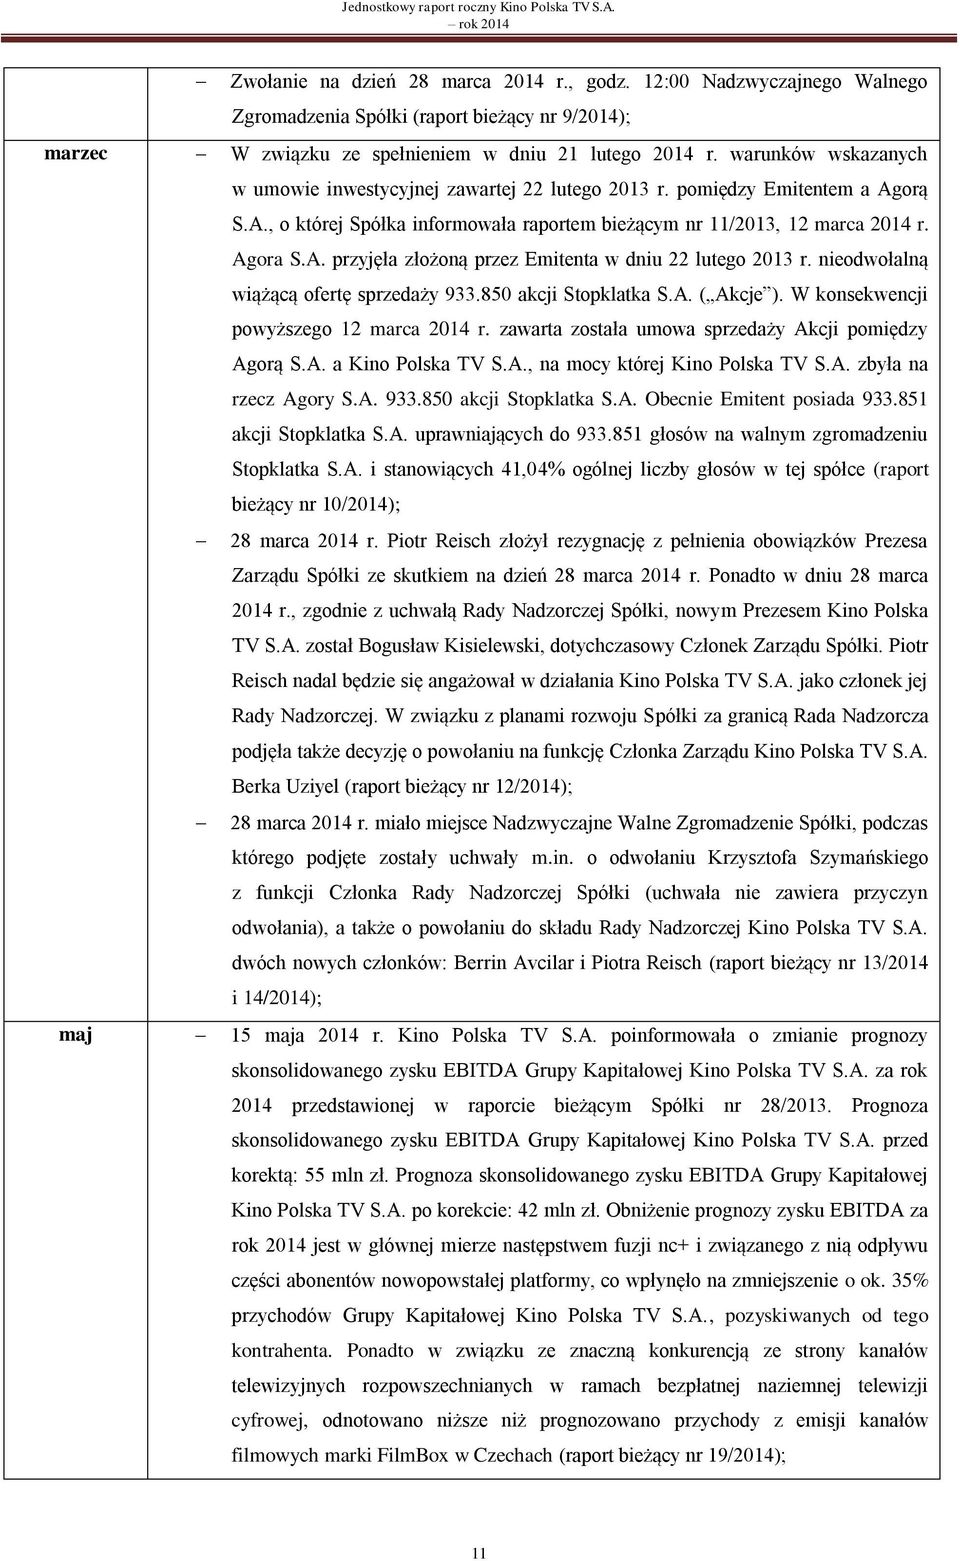 warunków wskazanych w umowie inwestycyjnej zawartej 22 lutego 2013 r. pomiędzy Emitentem a Agorą S.A., o której Spółka informowała raportem bieżącym nr 11/2013, 12 marca 2014 r. Agora S.A. przyjęła złożoną przez Emitenta w dniu 22 lutego 2013 r.